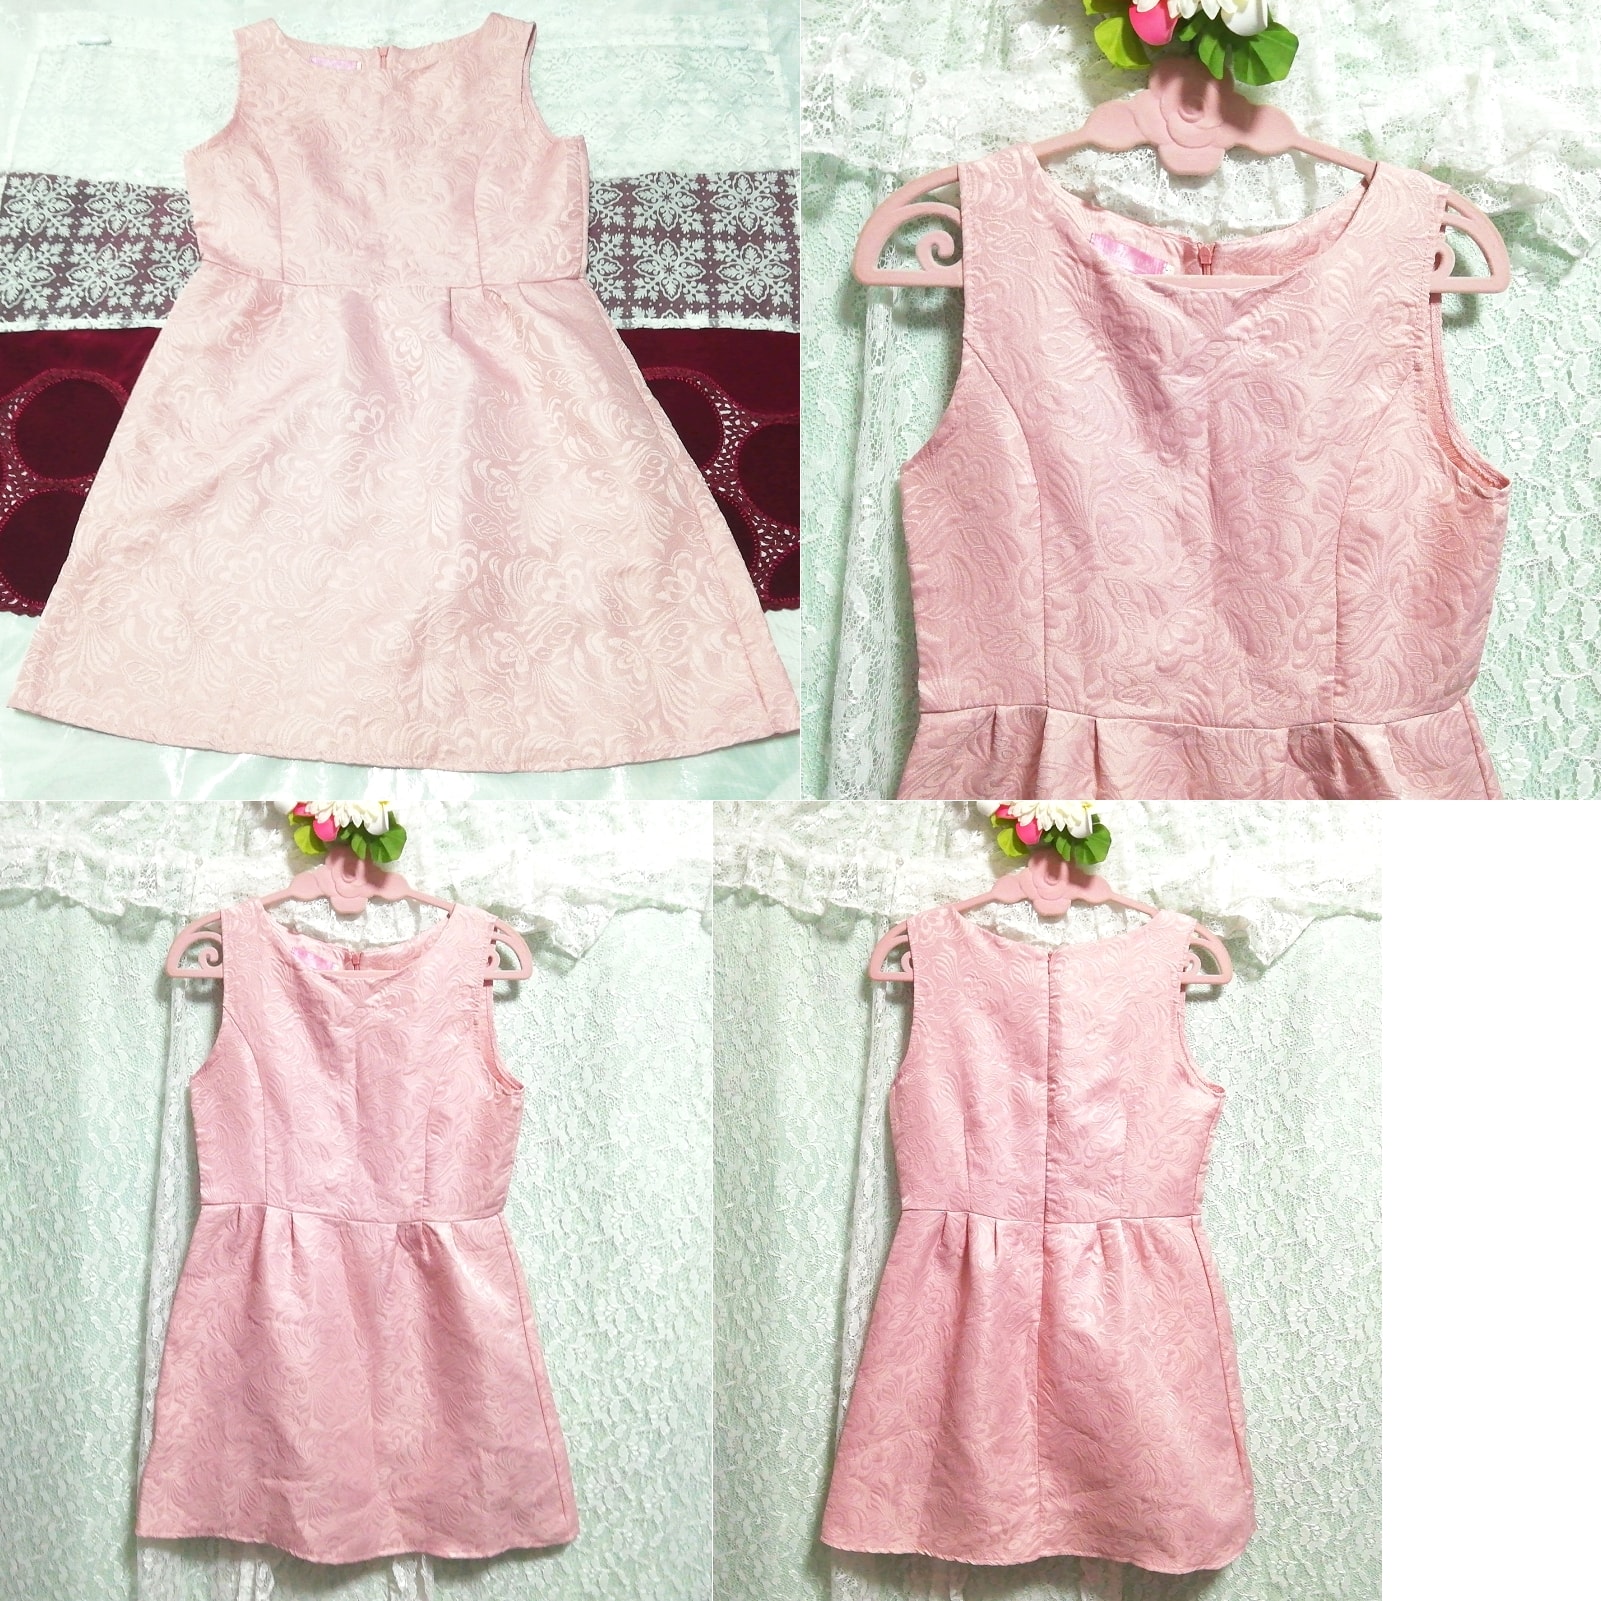 Vestido camisón negligee minifalda rosa sin mangas, sayo, sin mangas, sin mangas, talla m